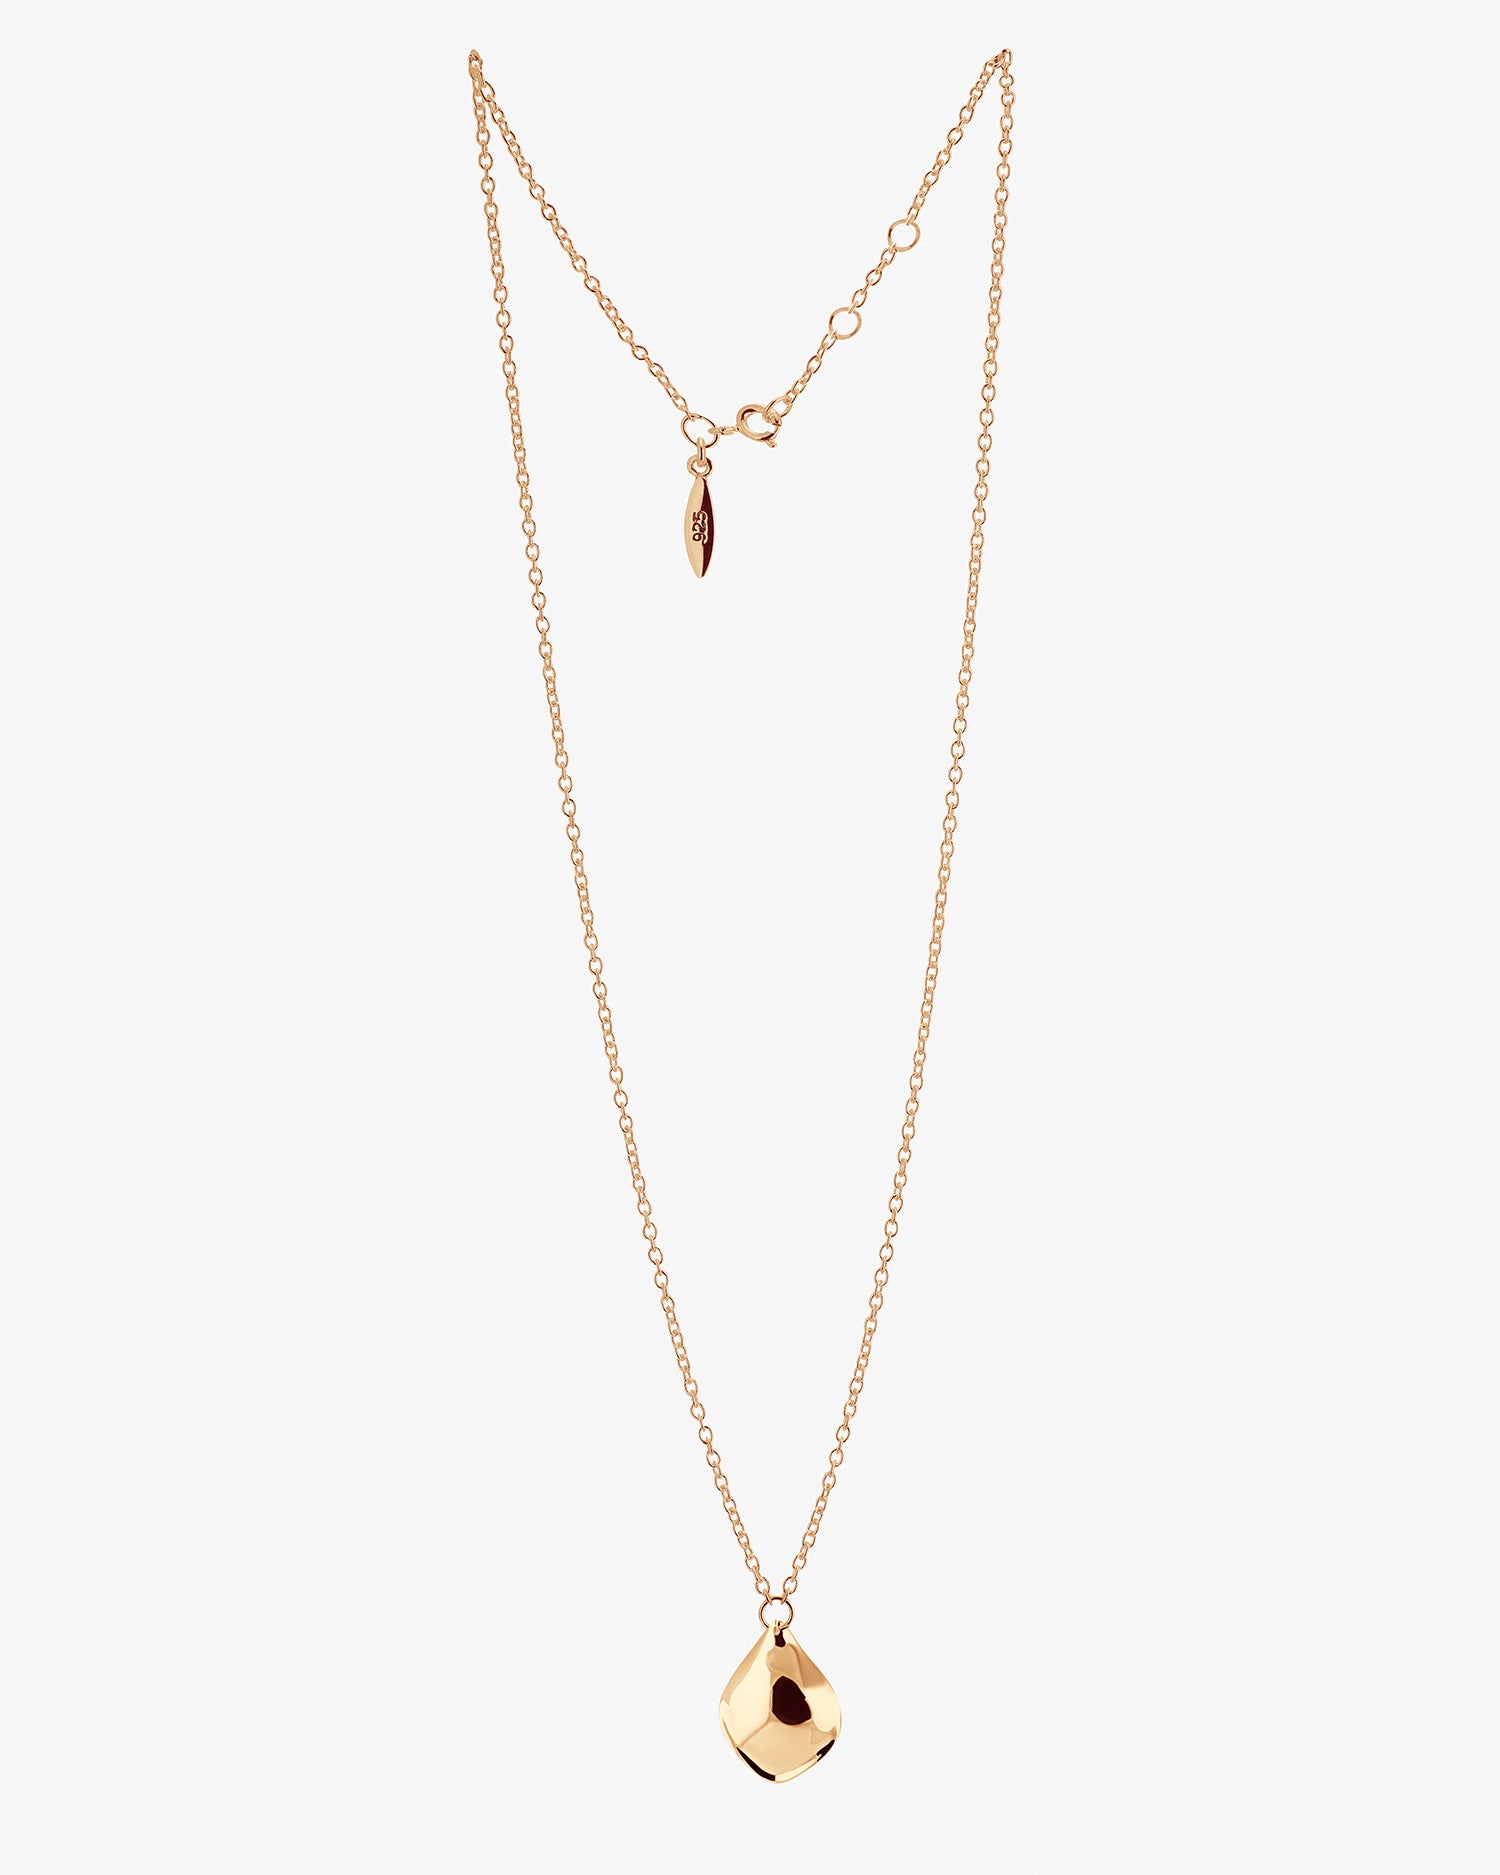 Gaias Grace single necklace gold